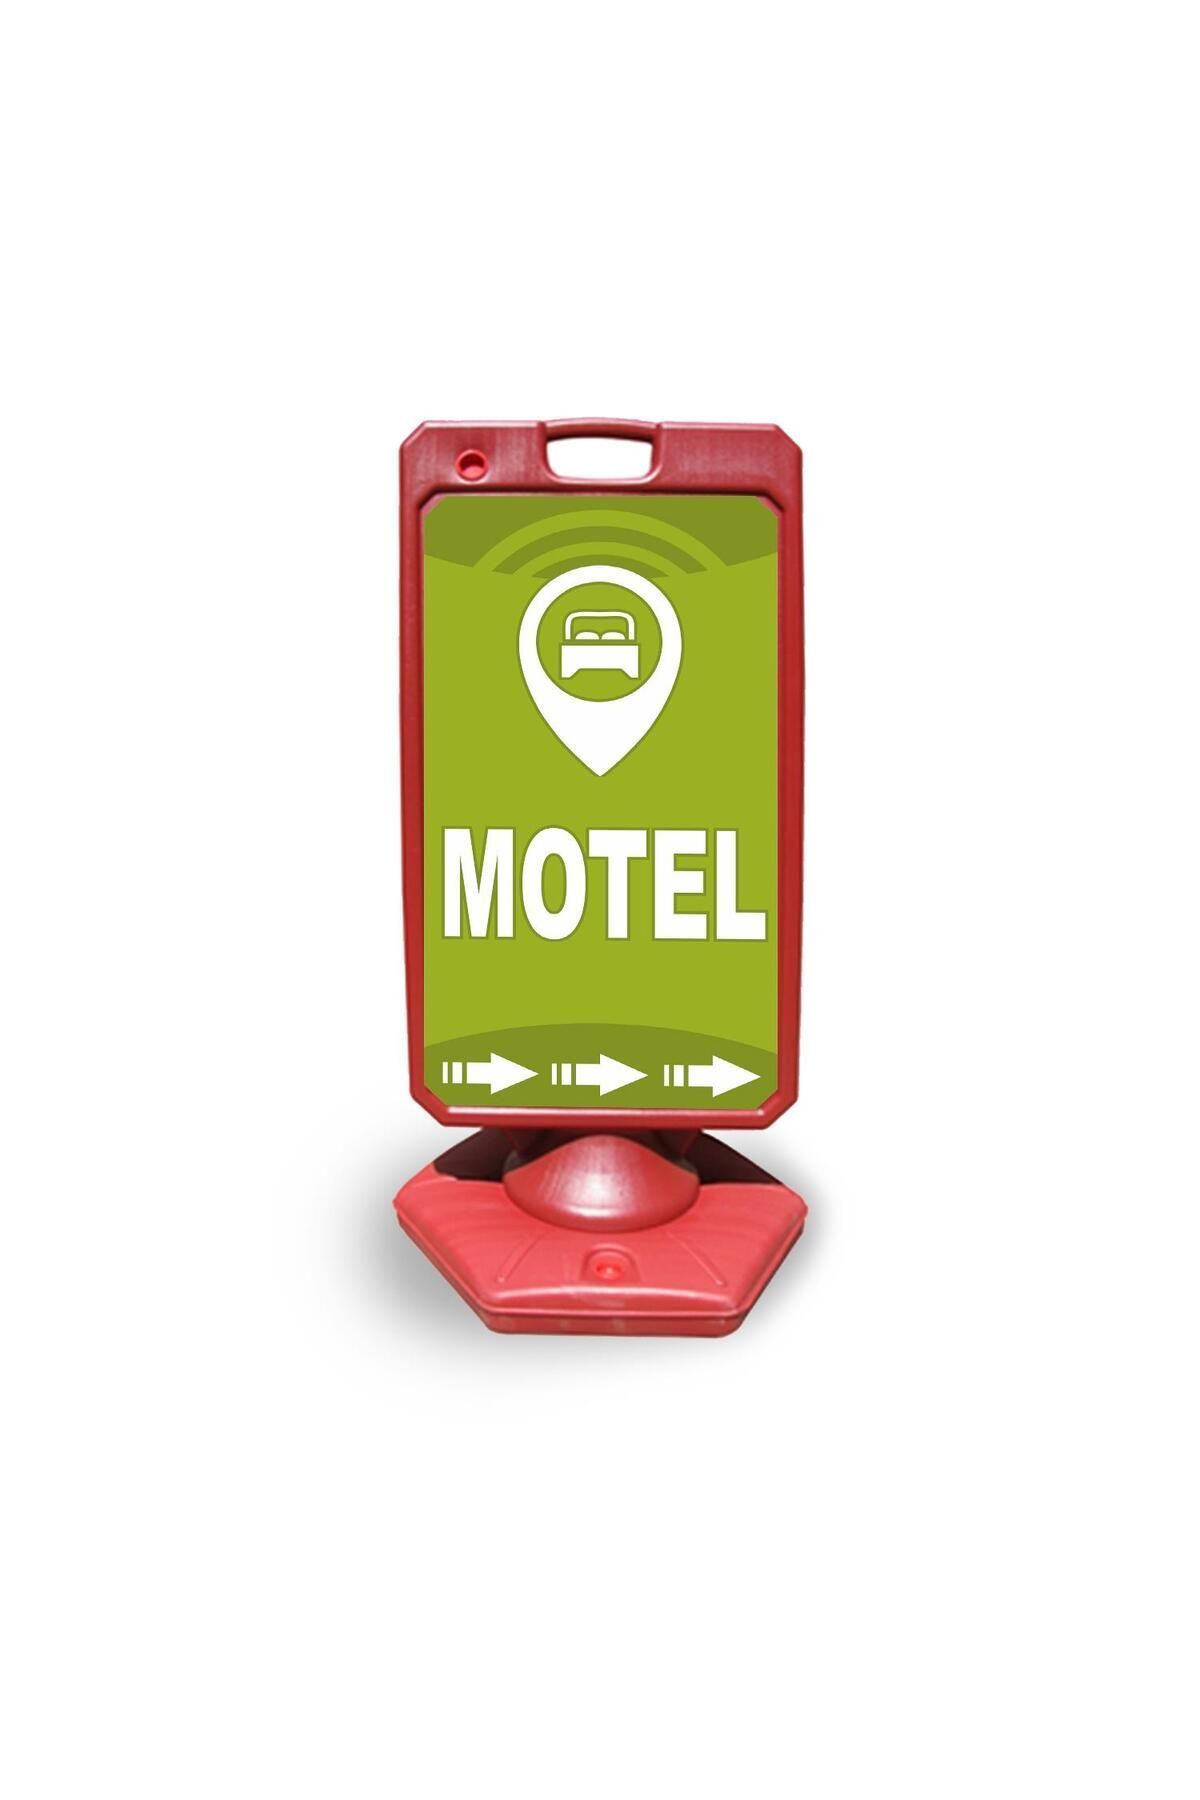 Reklamediyoruz Motel Reklam Ve Yönlendirme Uyari Dubasi A Tabela Kırmızı